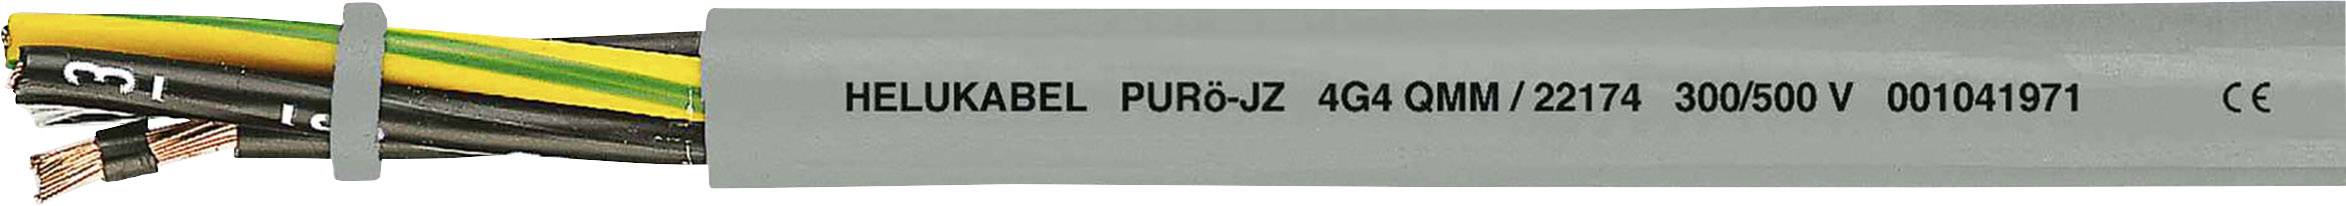 HELUKABEL PURö-JZ Steuerleitung 5 G 1 mm² Grau 22135-1000 1000 m